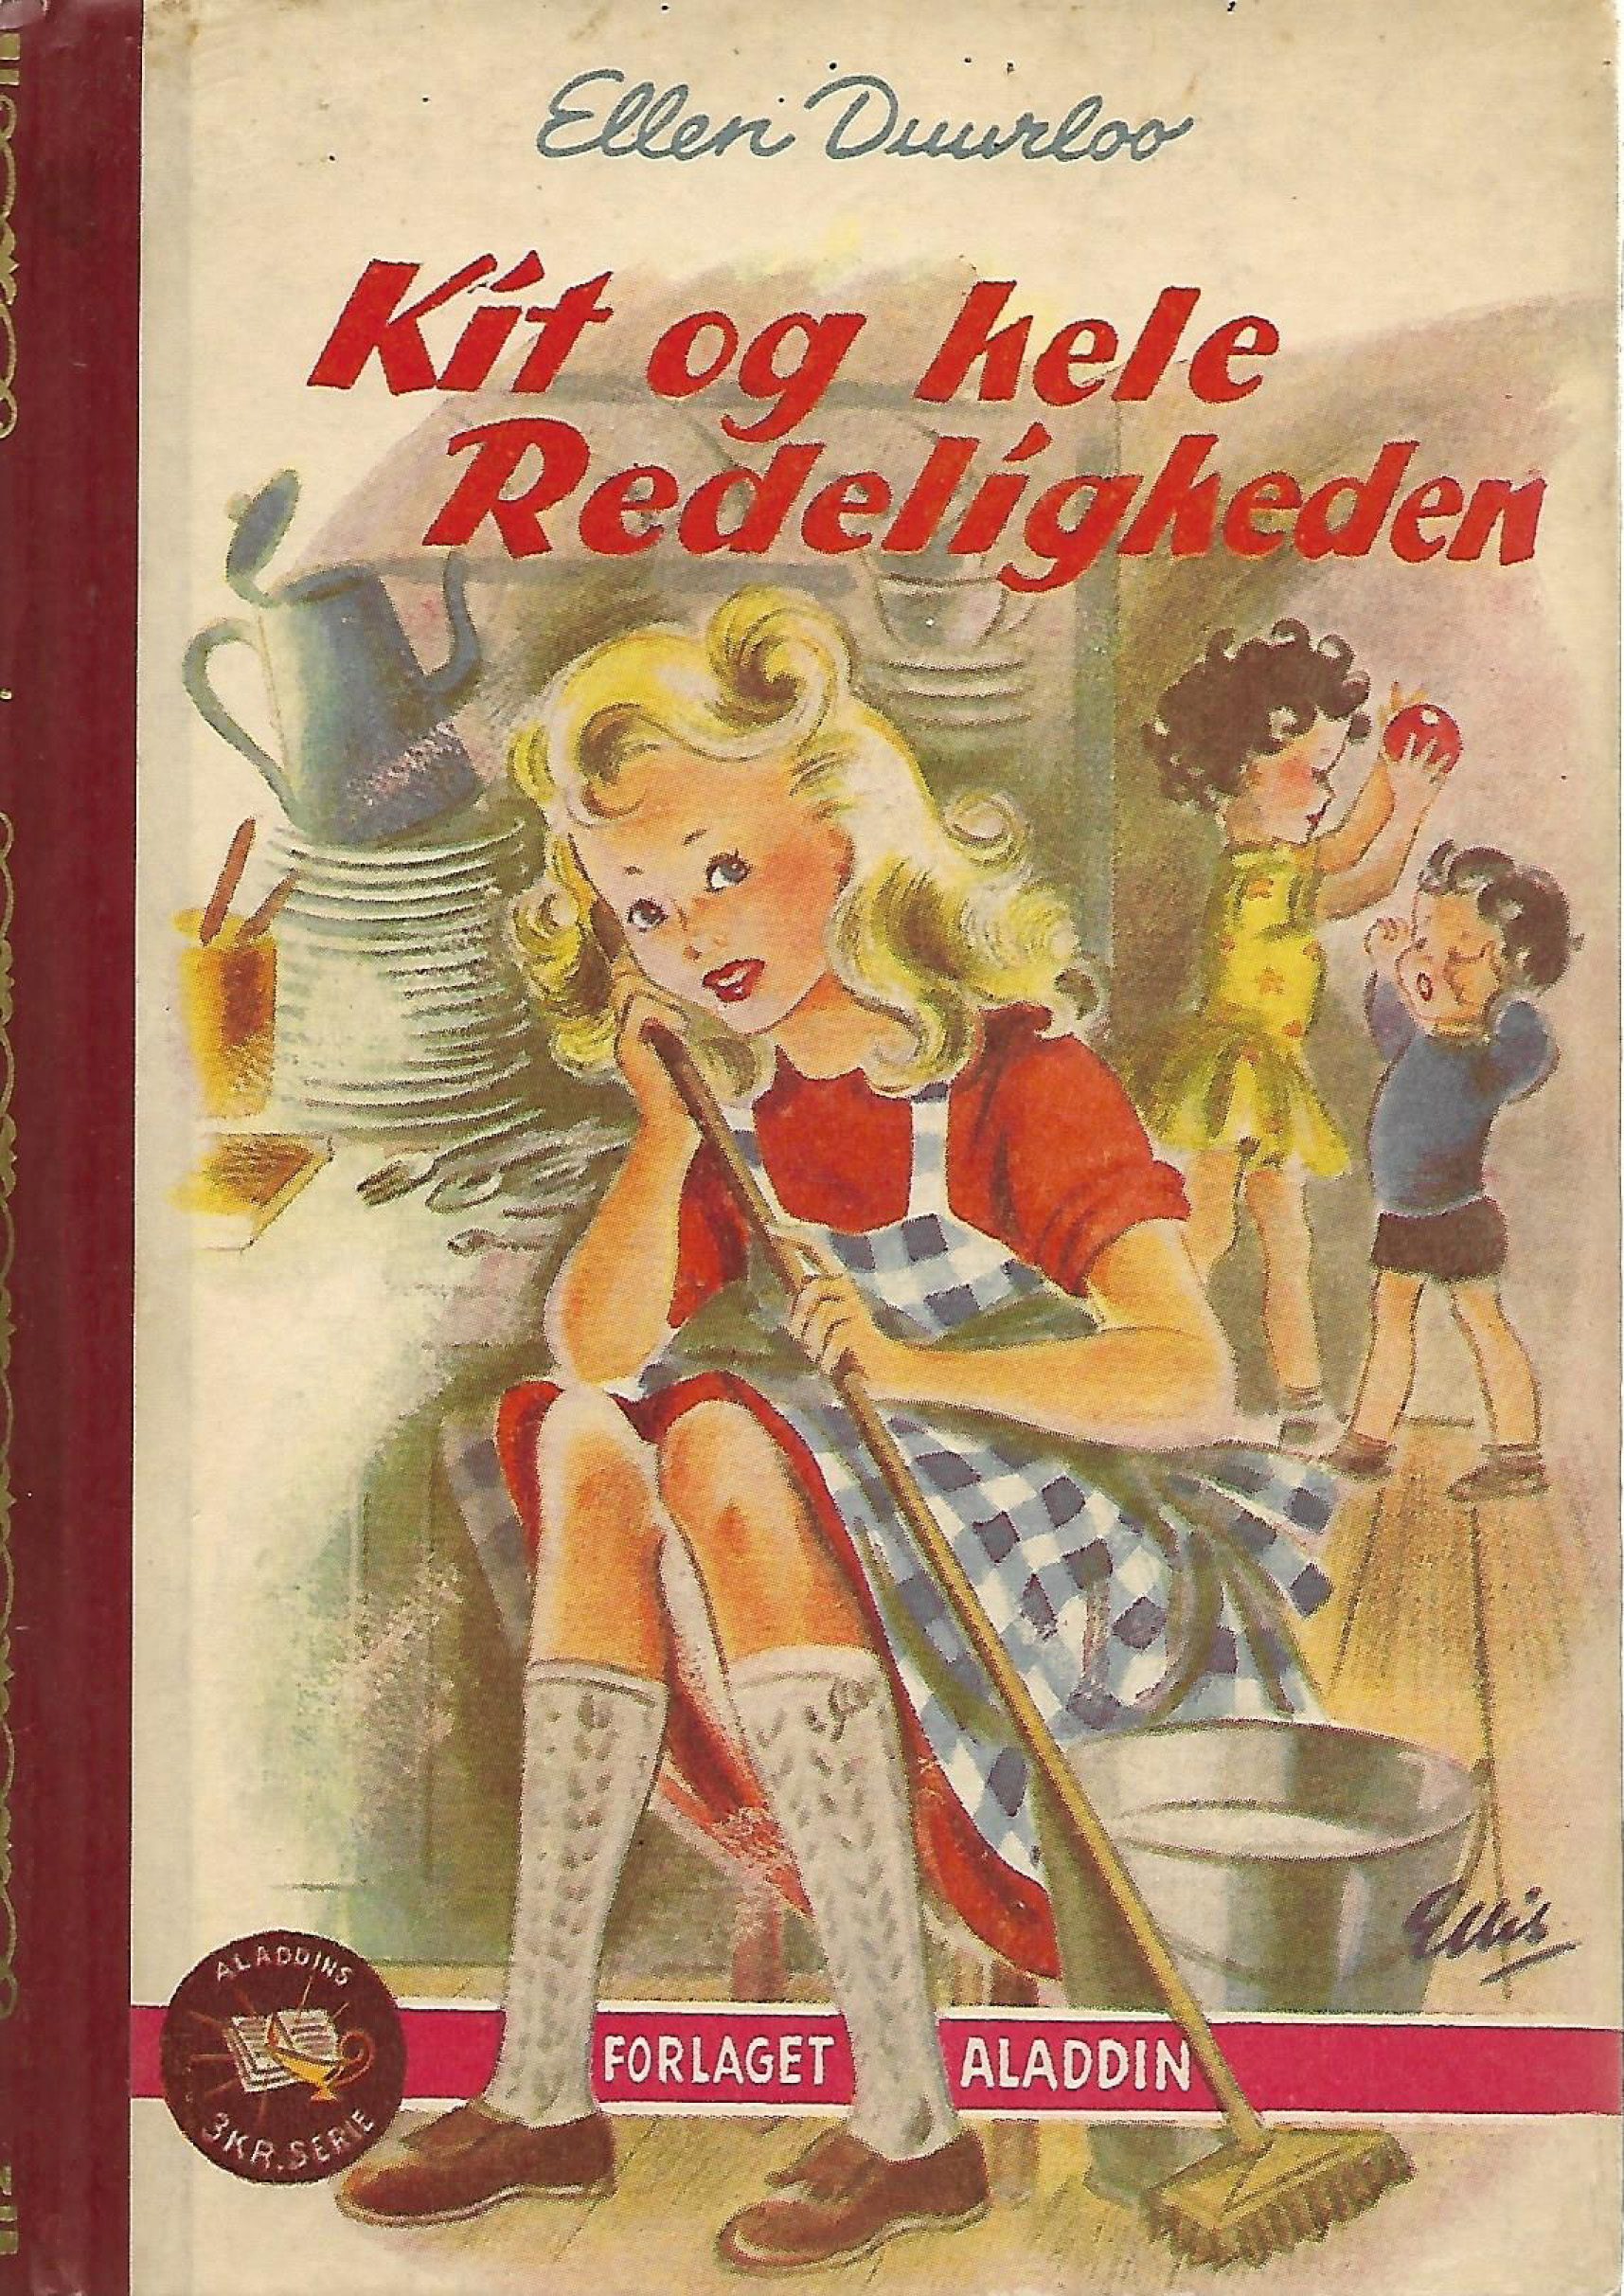 Kit og hele Redeligheden - Ellen Duurloo 1946-1